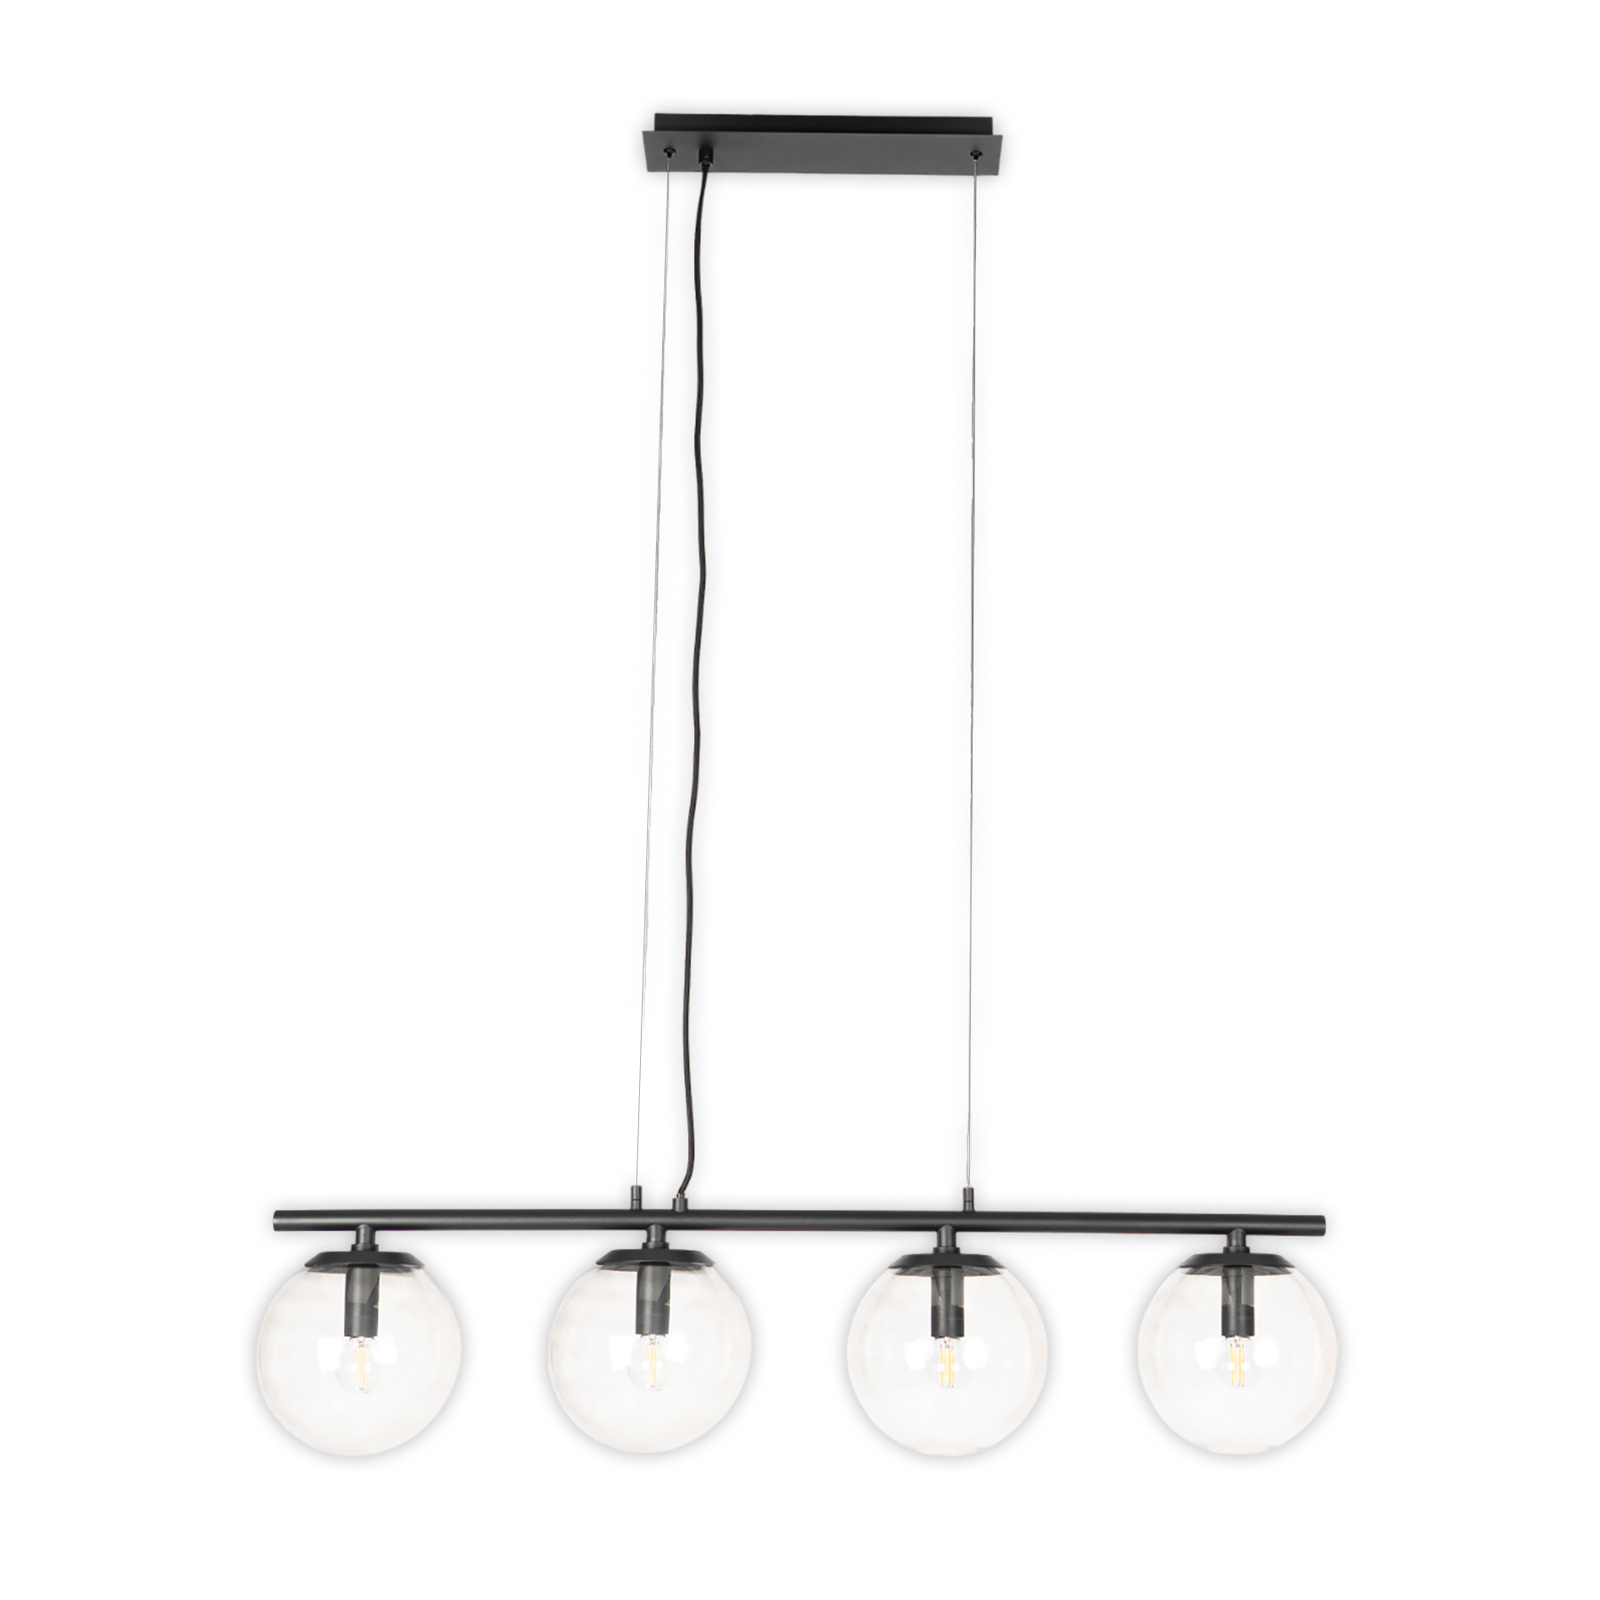 Lucande Sotiana hanging light, 4 glass globes, black